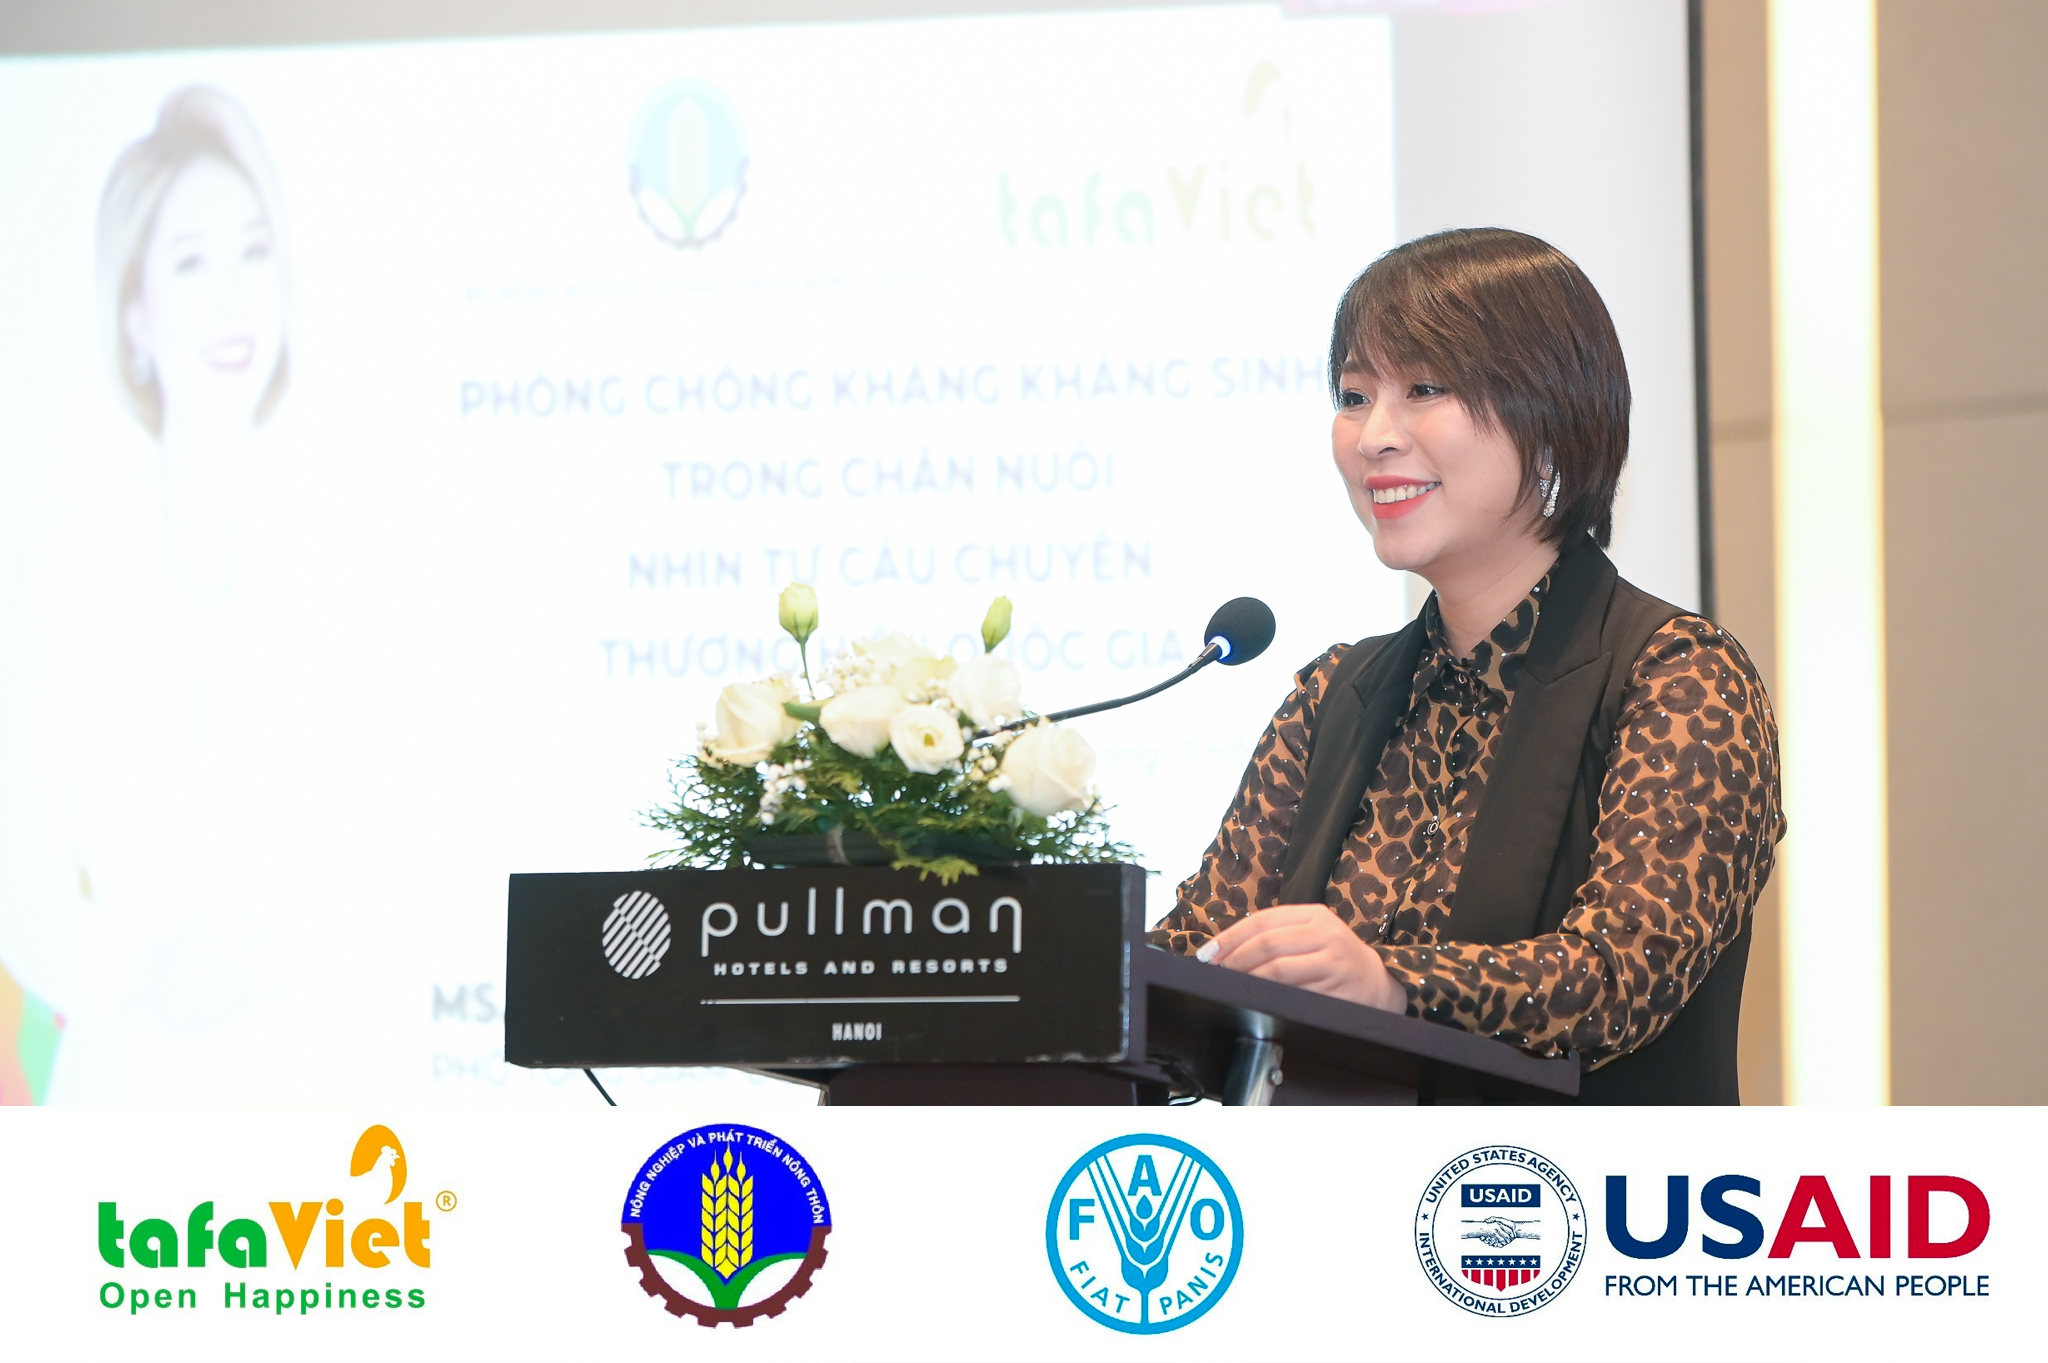 Bà Chu Thị Hồng Thủy - Phó Tổng Giám đốc Tafa Việt phát biểu tại sự kiện